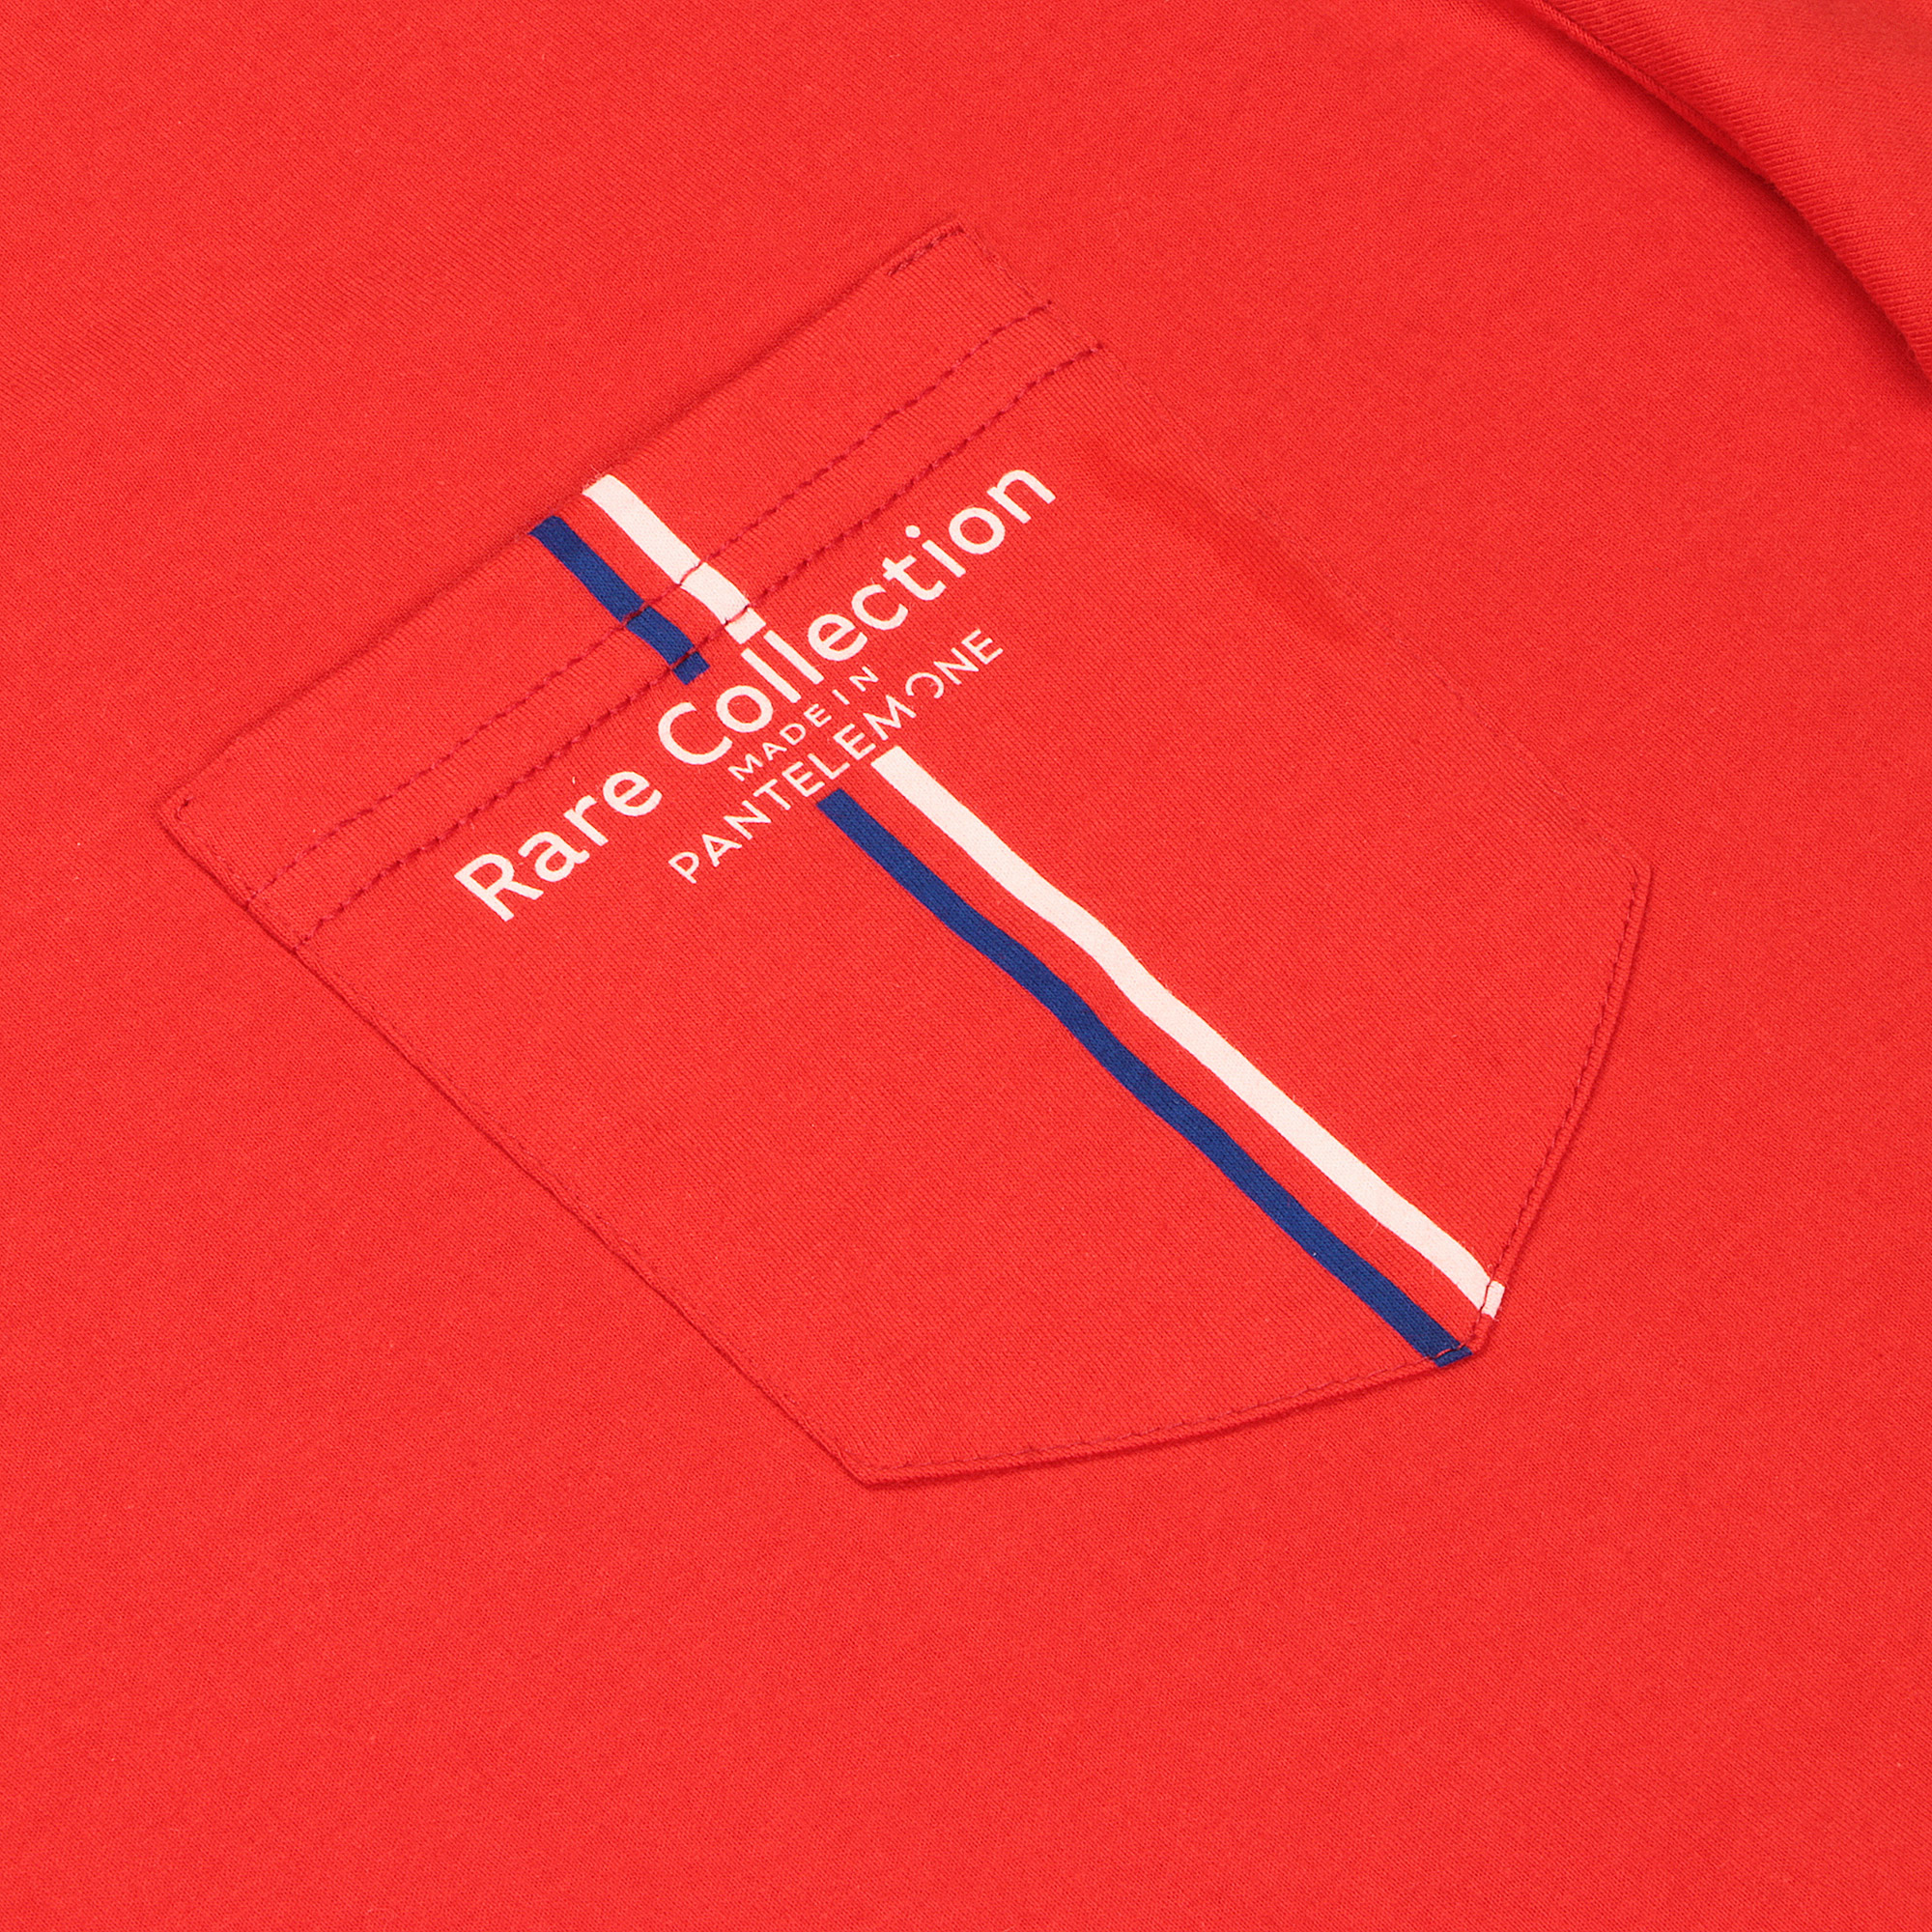 Мужская футболка Pantelemone MF-898 красная 48, цвет красный, размер 48 - фото 2